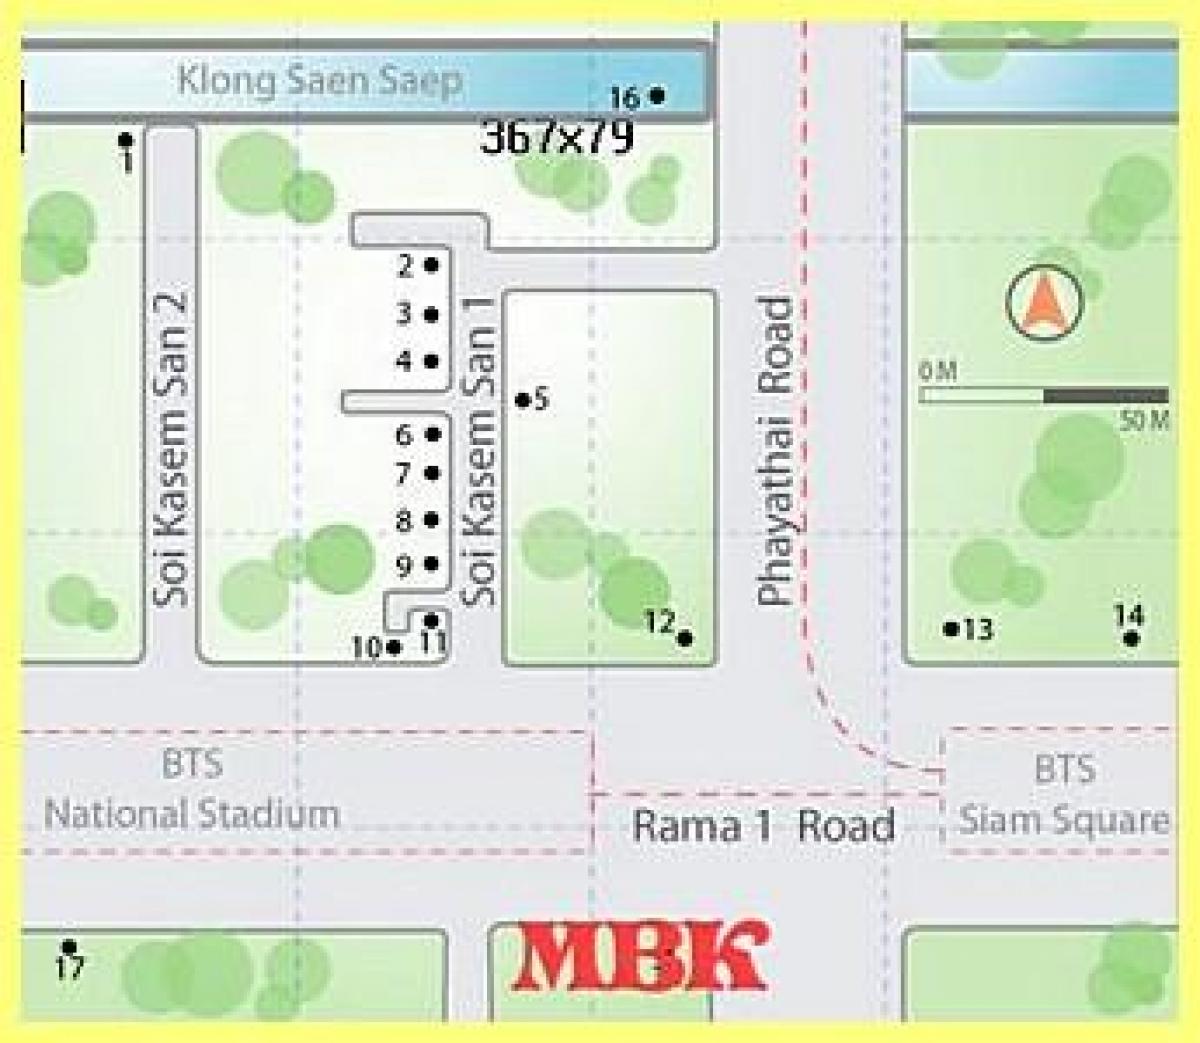 търговски център mbk в Банкок картата